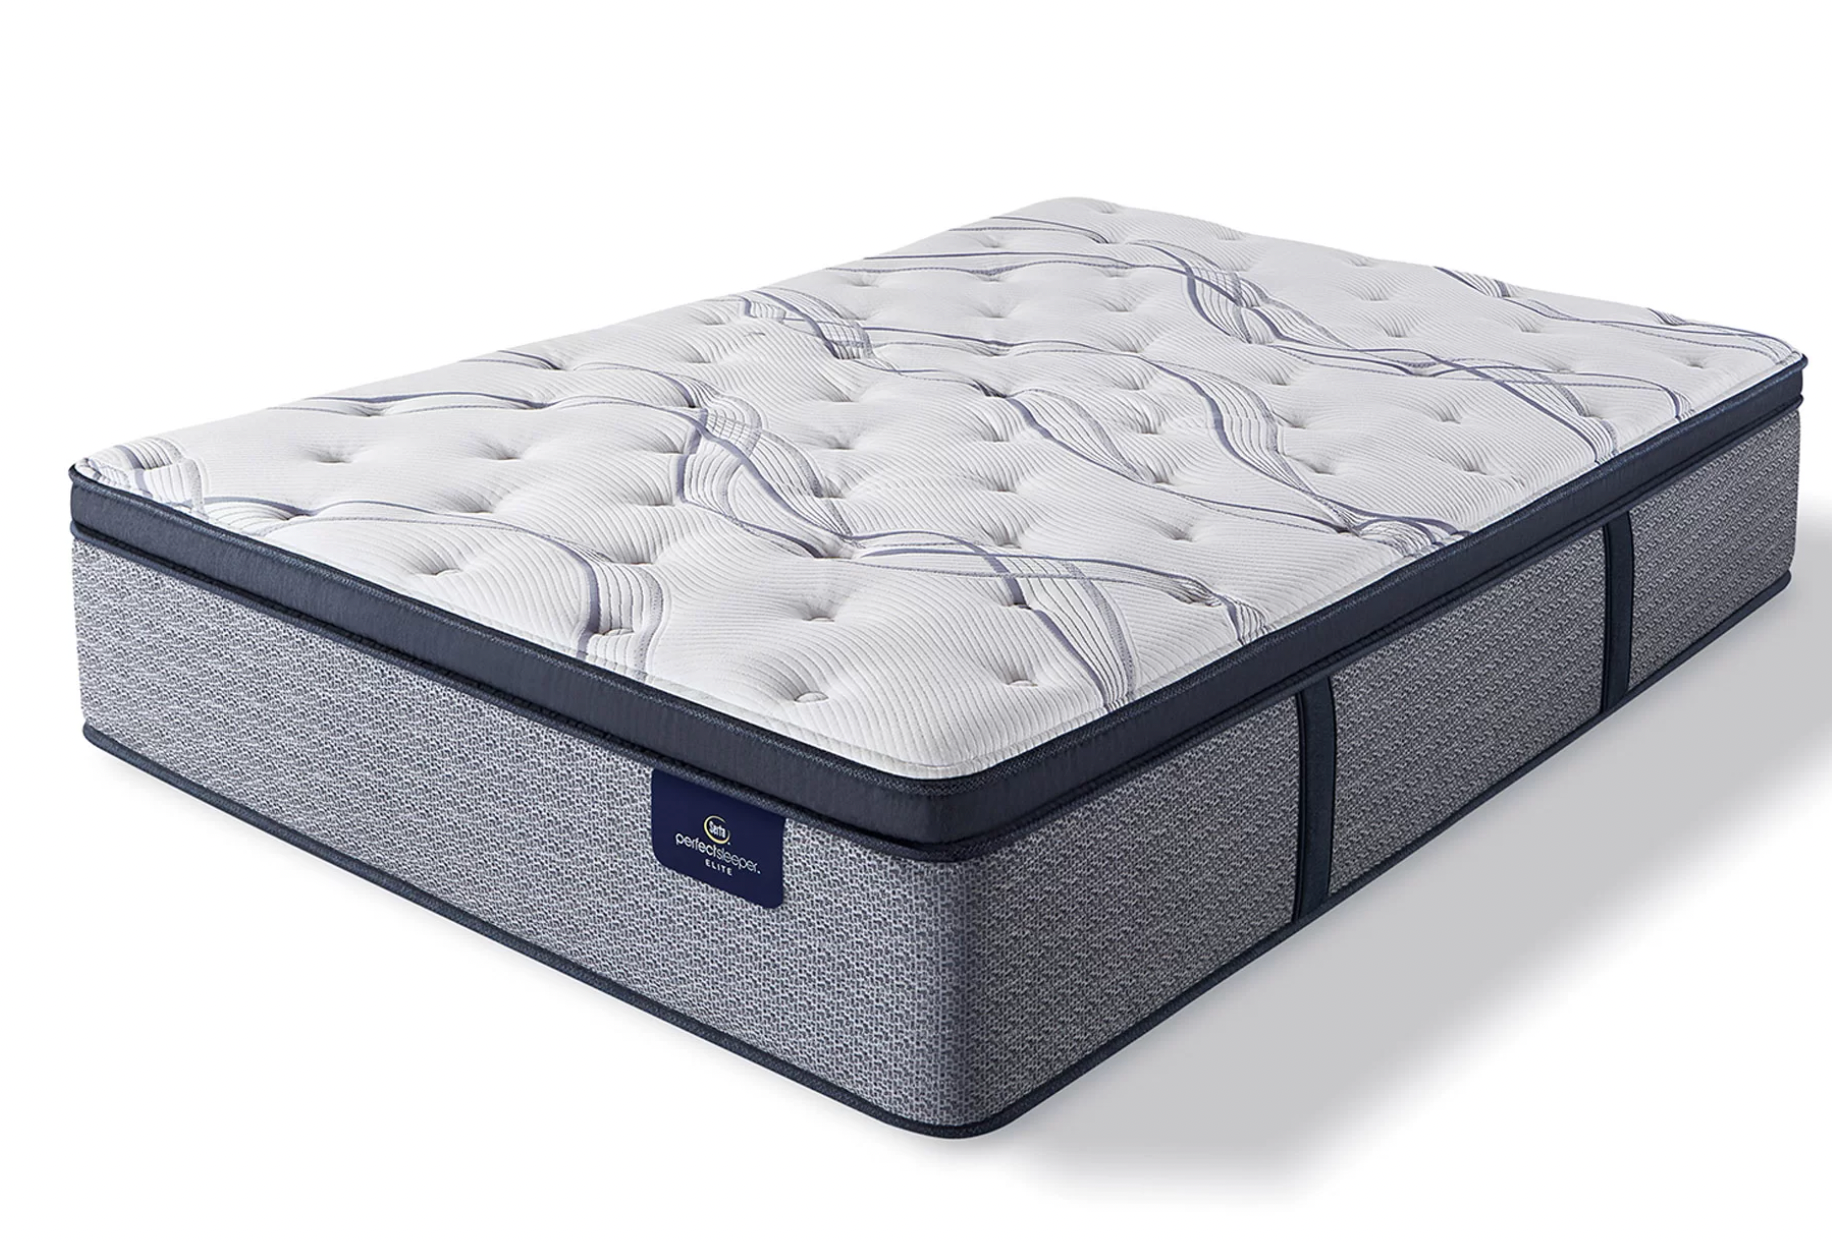 Serta Perfect Sleeper Firm Pillow Top Hybrid Mattress.